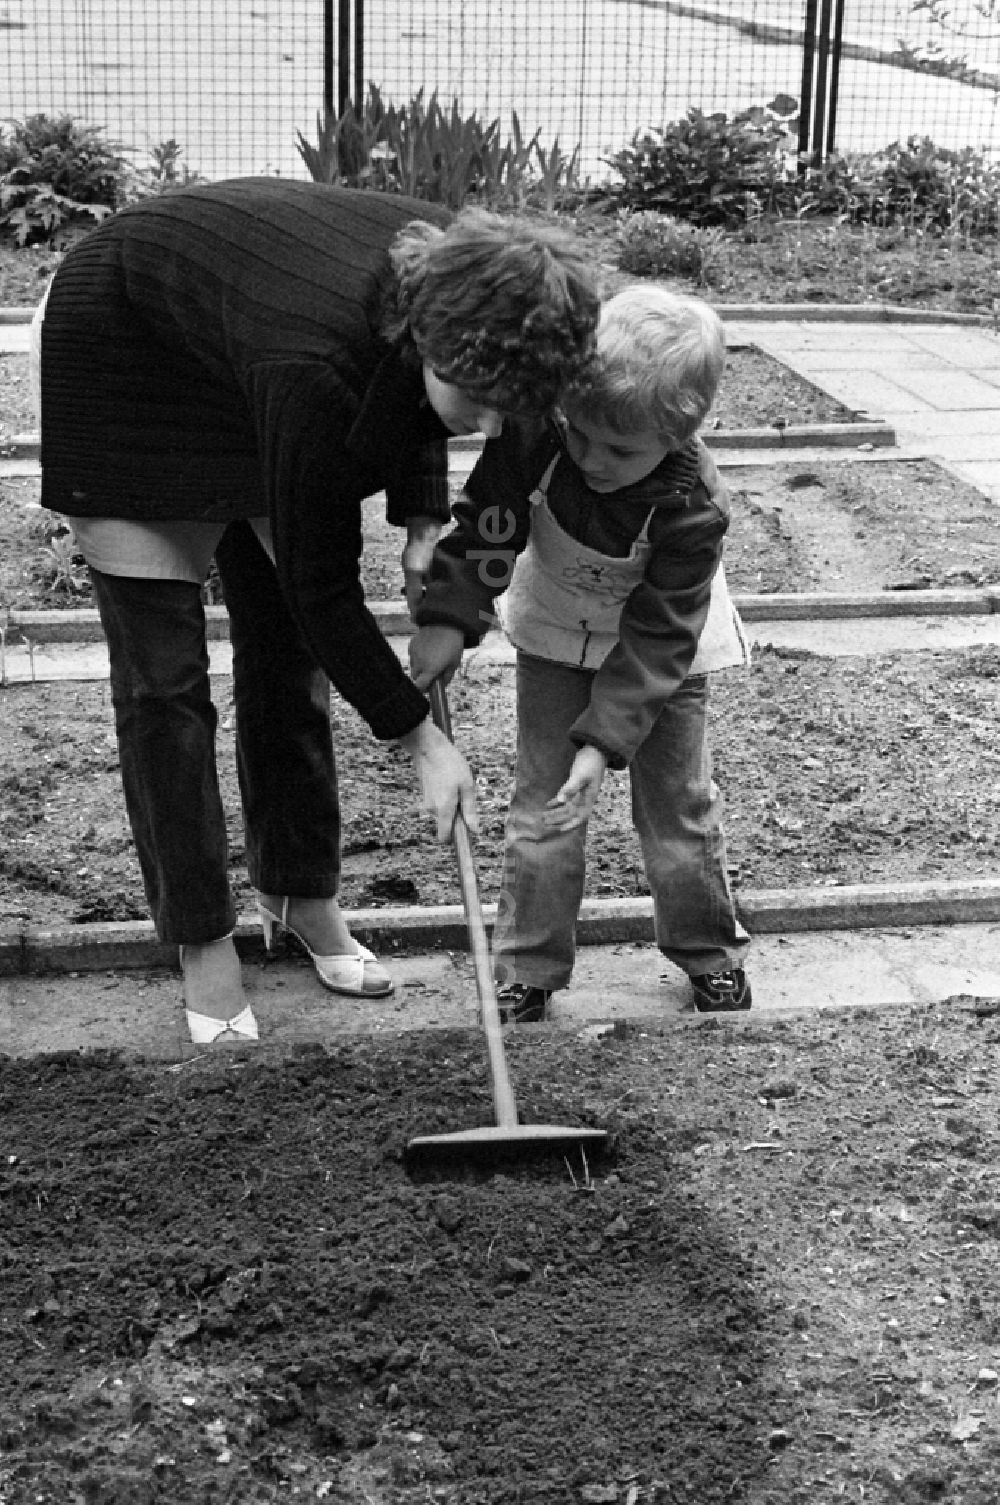 DDR-Bildarchiv: Berlin - Gartenarbeit im Schulgarten in Berlin, der ehemaligen Hauptstadt der DDR, Deutsche Demokratische Republik